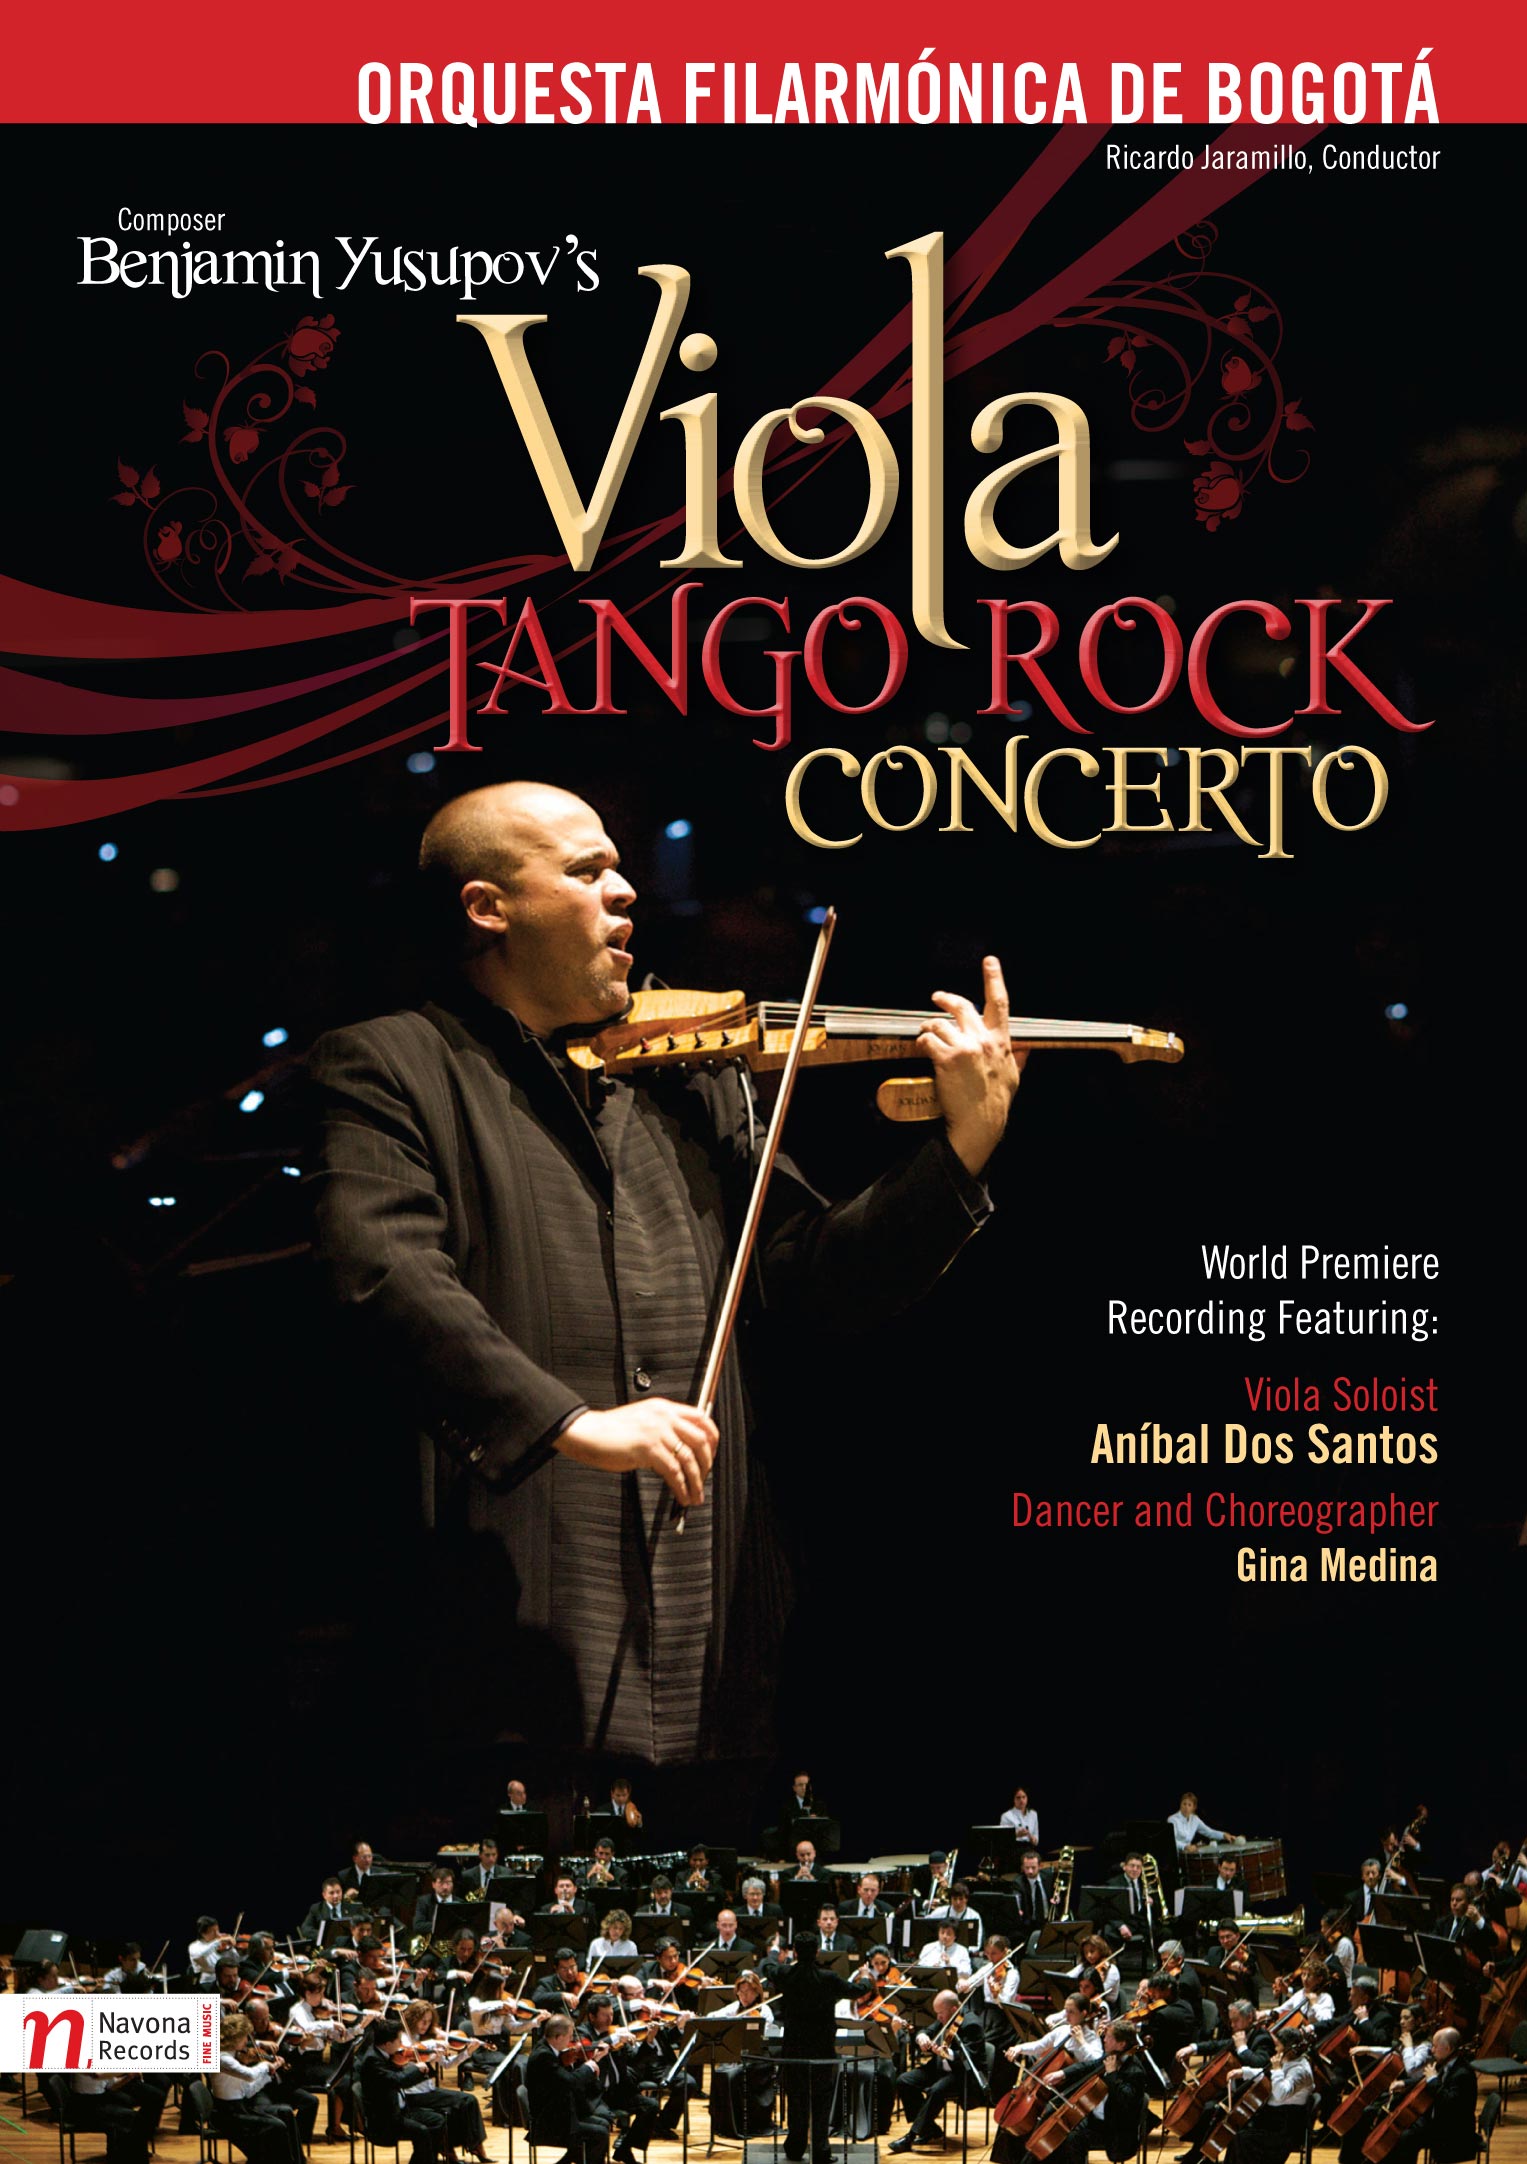 Viola Tango Rock Concerto